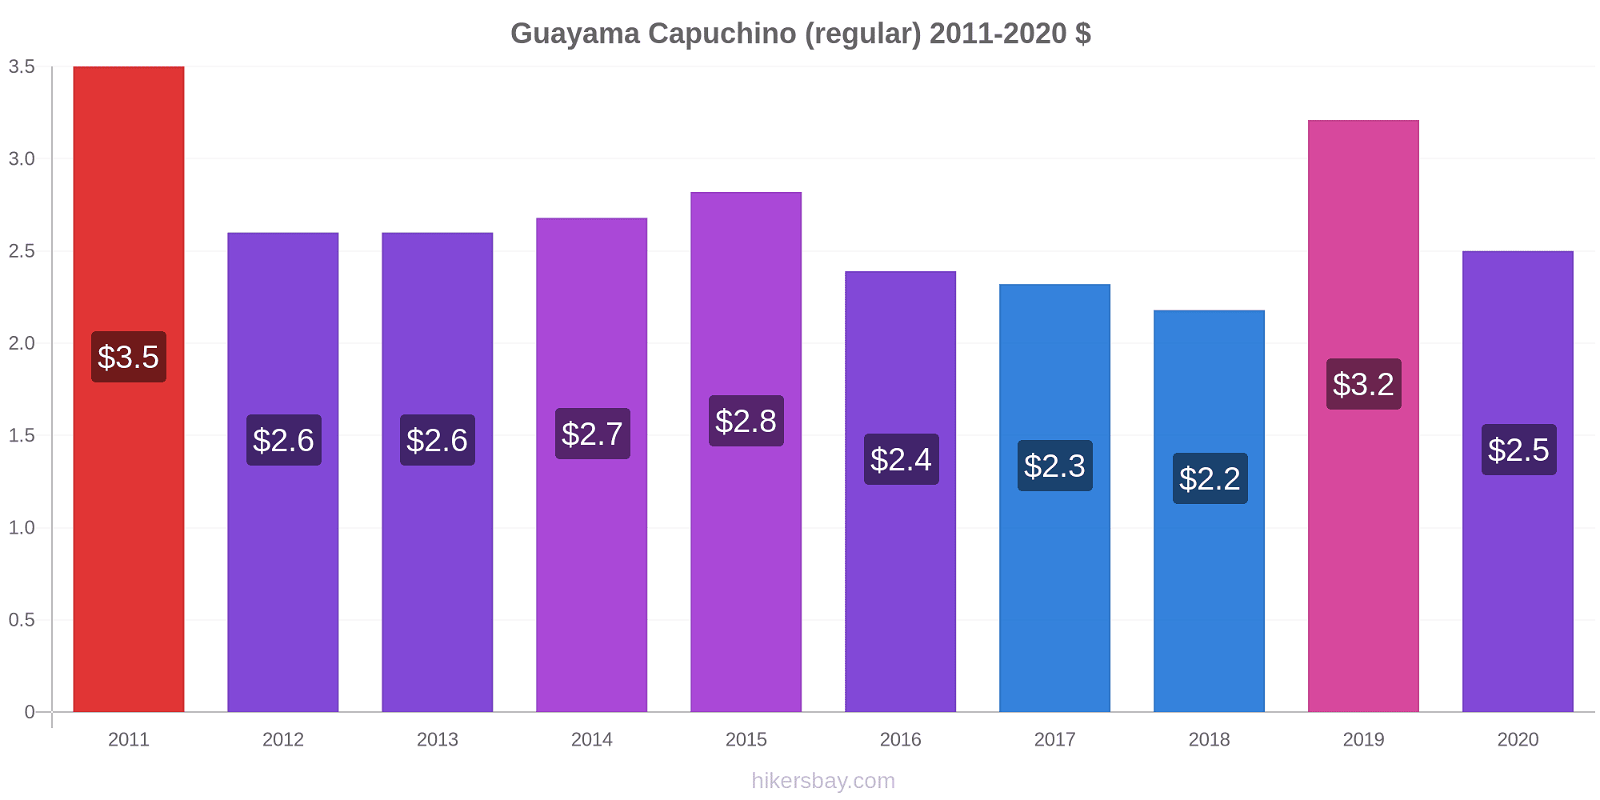 Guayama cambios de precios Capuchino (regular) hikersbay.com